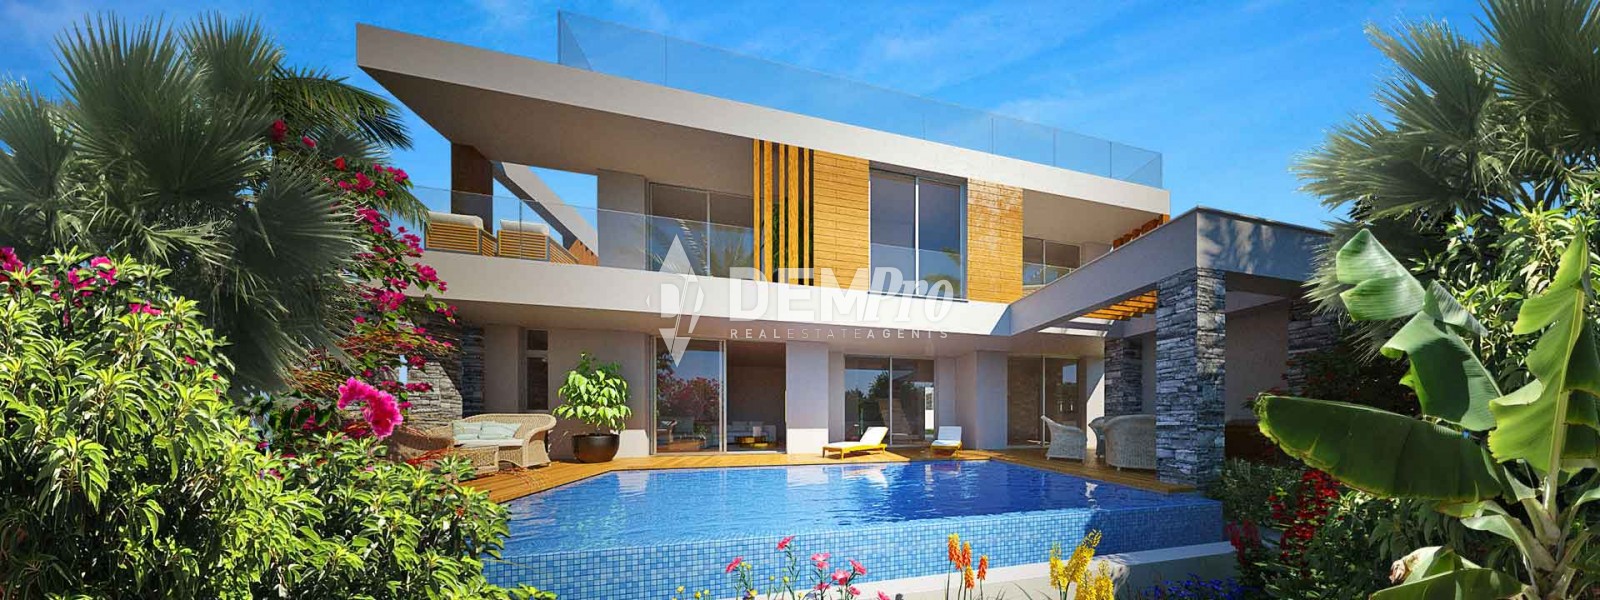 Villa For Sale in Paphos City Center, Paphos - PA10237